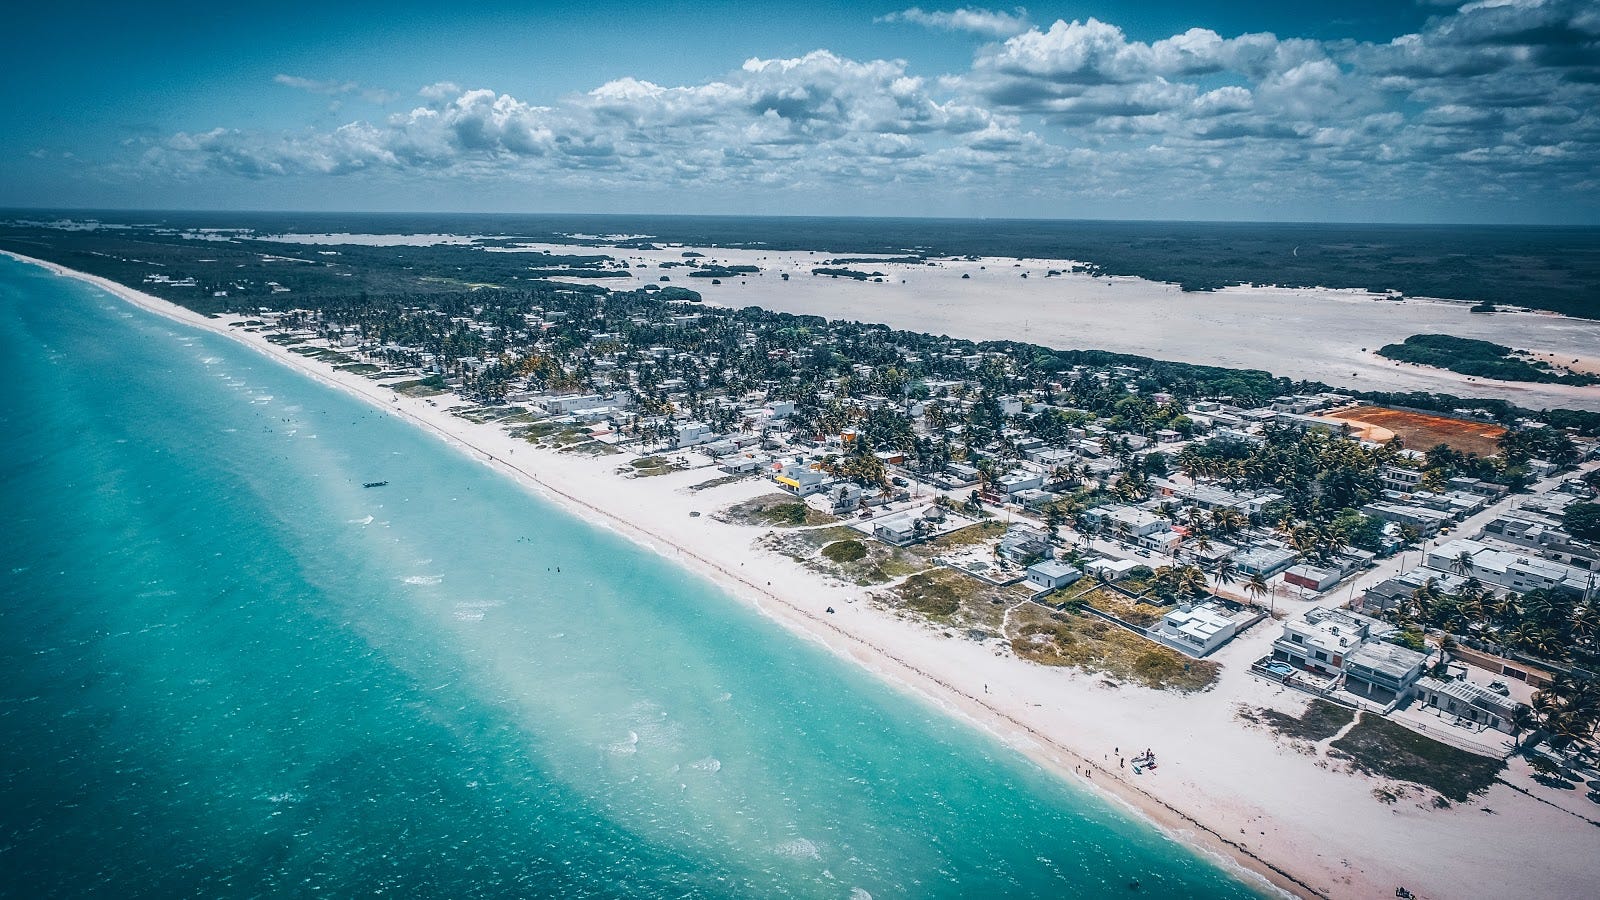 En Yucatan Siempre Es Verano Las 5 Mejores Playas Yucatecas By Coldwell Banker Chichen Realty Chichenrealty Medium